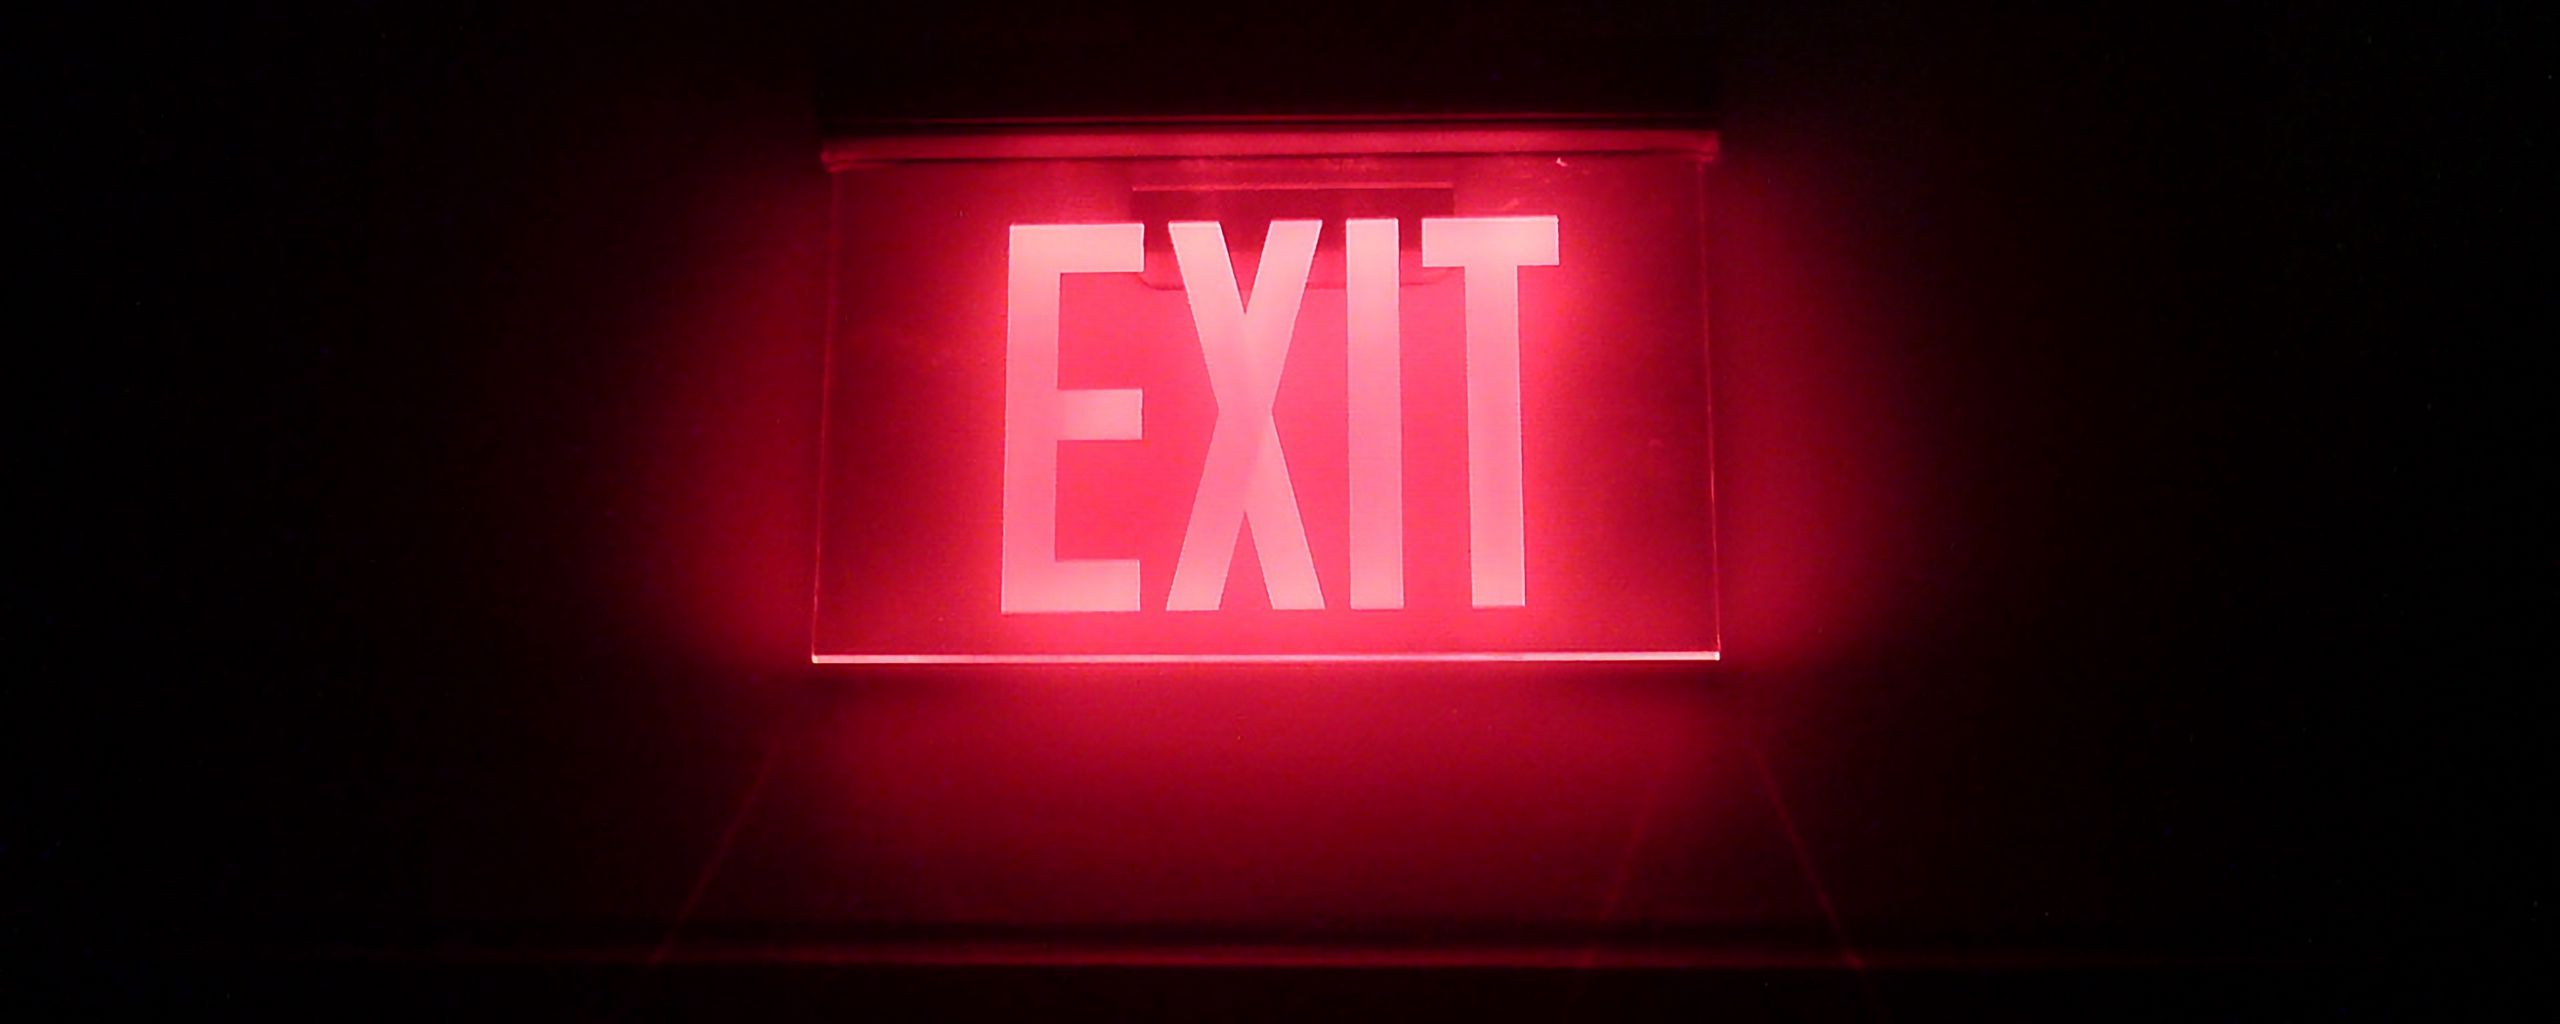 2560x1024 Wallpaper neon, backlight, inscription, exit